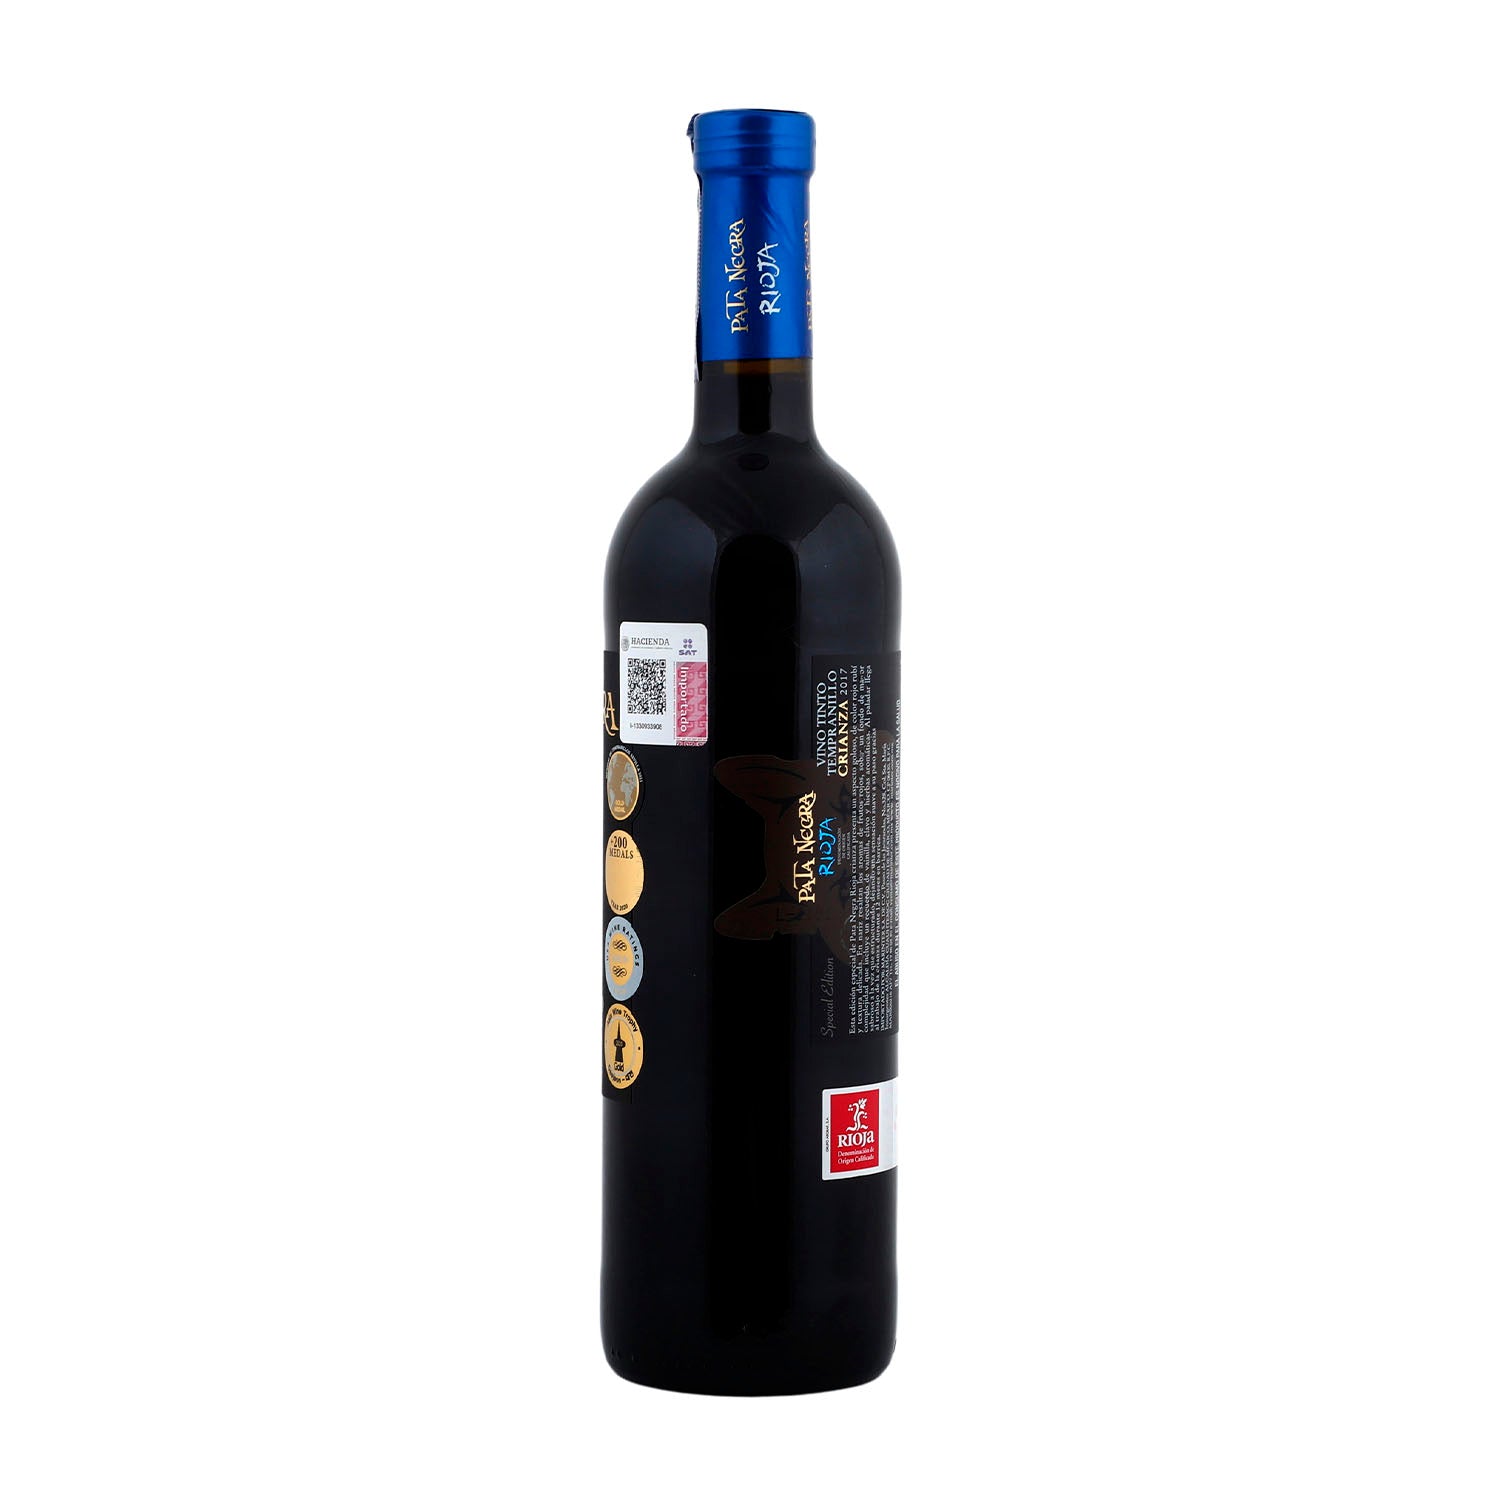 Vino Tinto Pata Negra Tempranillo Rioja Lobo de 750 ml - España